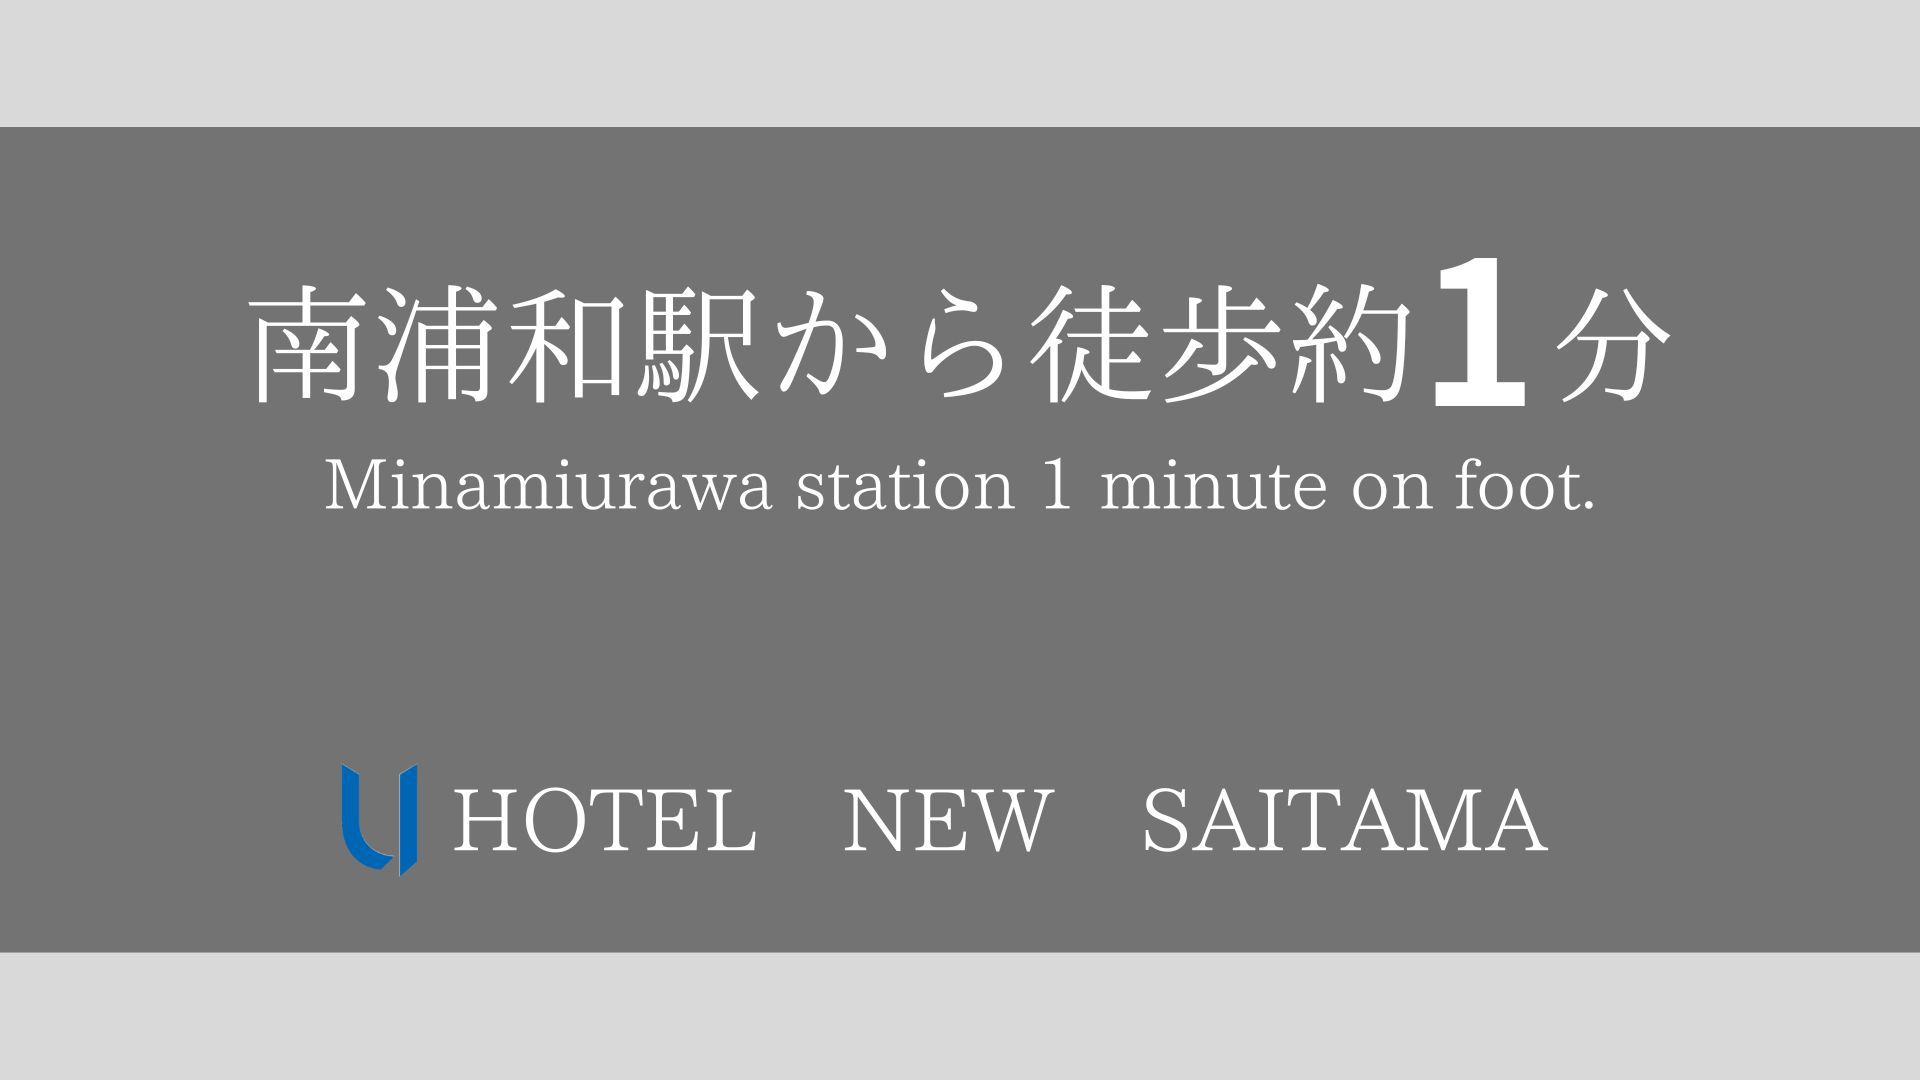 当ホテルはJR南浦和駅東口より徒歩約1分